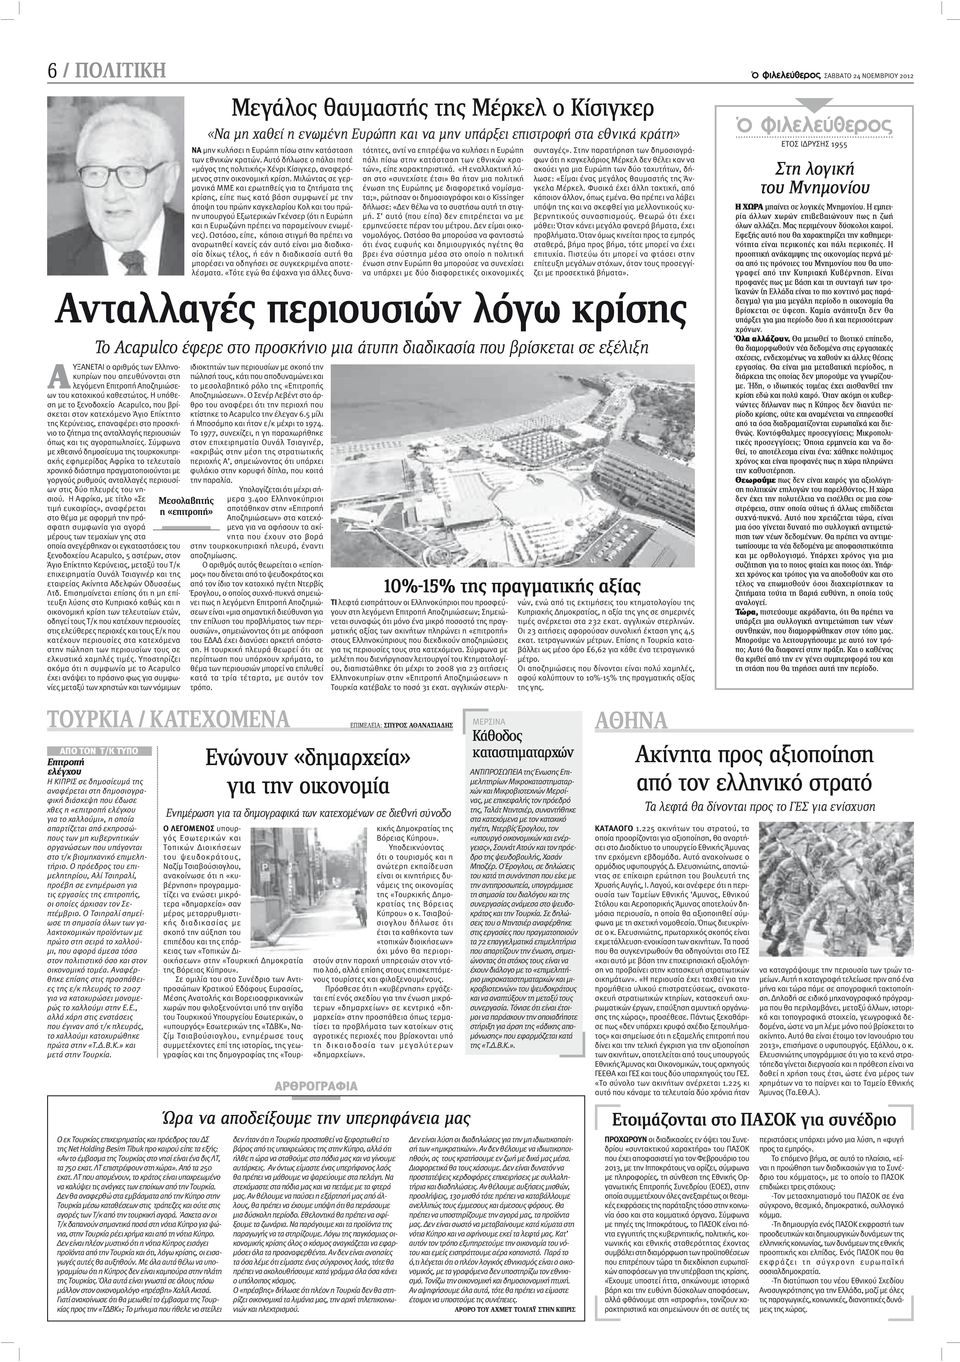 Σύμφωνα με χθεσινό δημοσίευμα της τουρκοκυπριακής εφημερίδας Αφρίκα το τελευταίο χρονικό διάστημα πραγματοποιούνται με γοργούς ρυθμούς ανταλλαγές περιουσίων στις δύο πλευρές του νησιού.